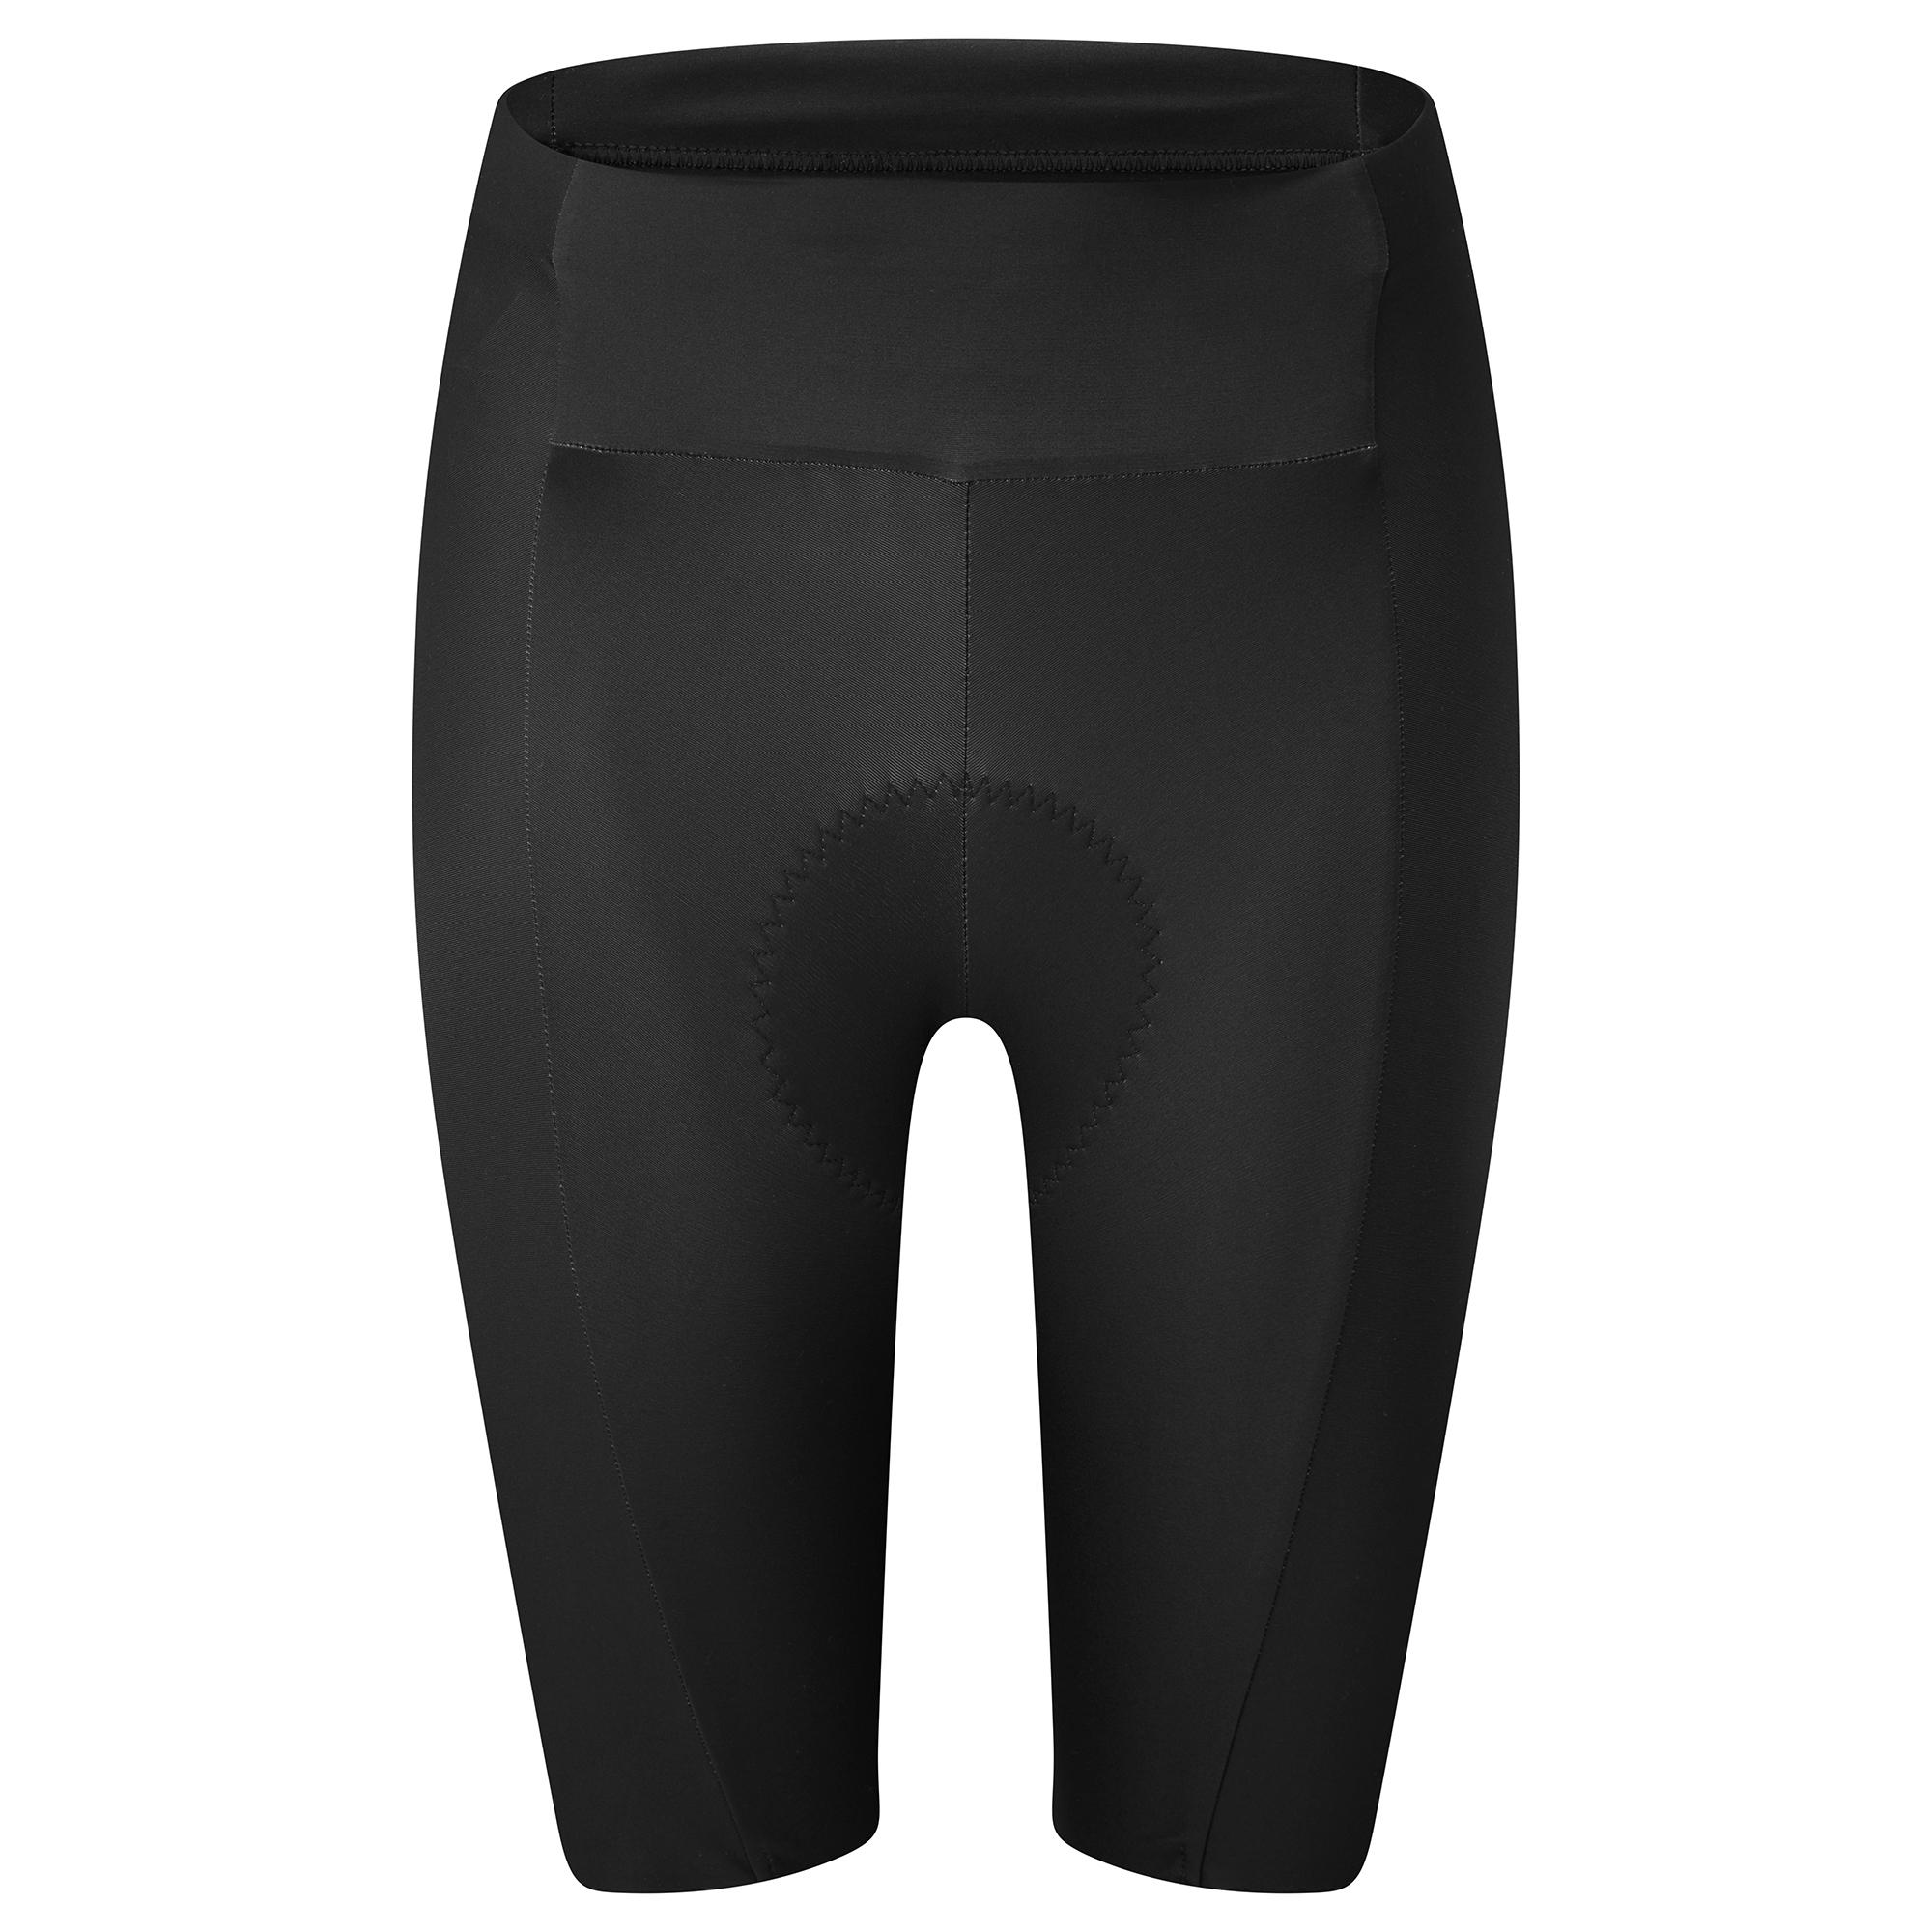 Dhb Aeron Womens Shorts 2.0 - Black/black